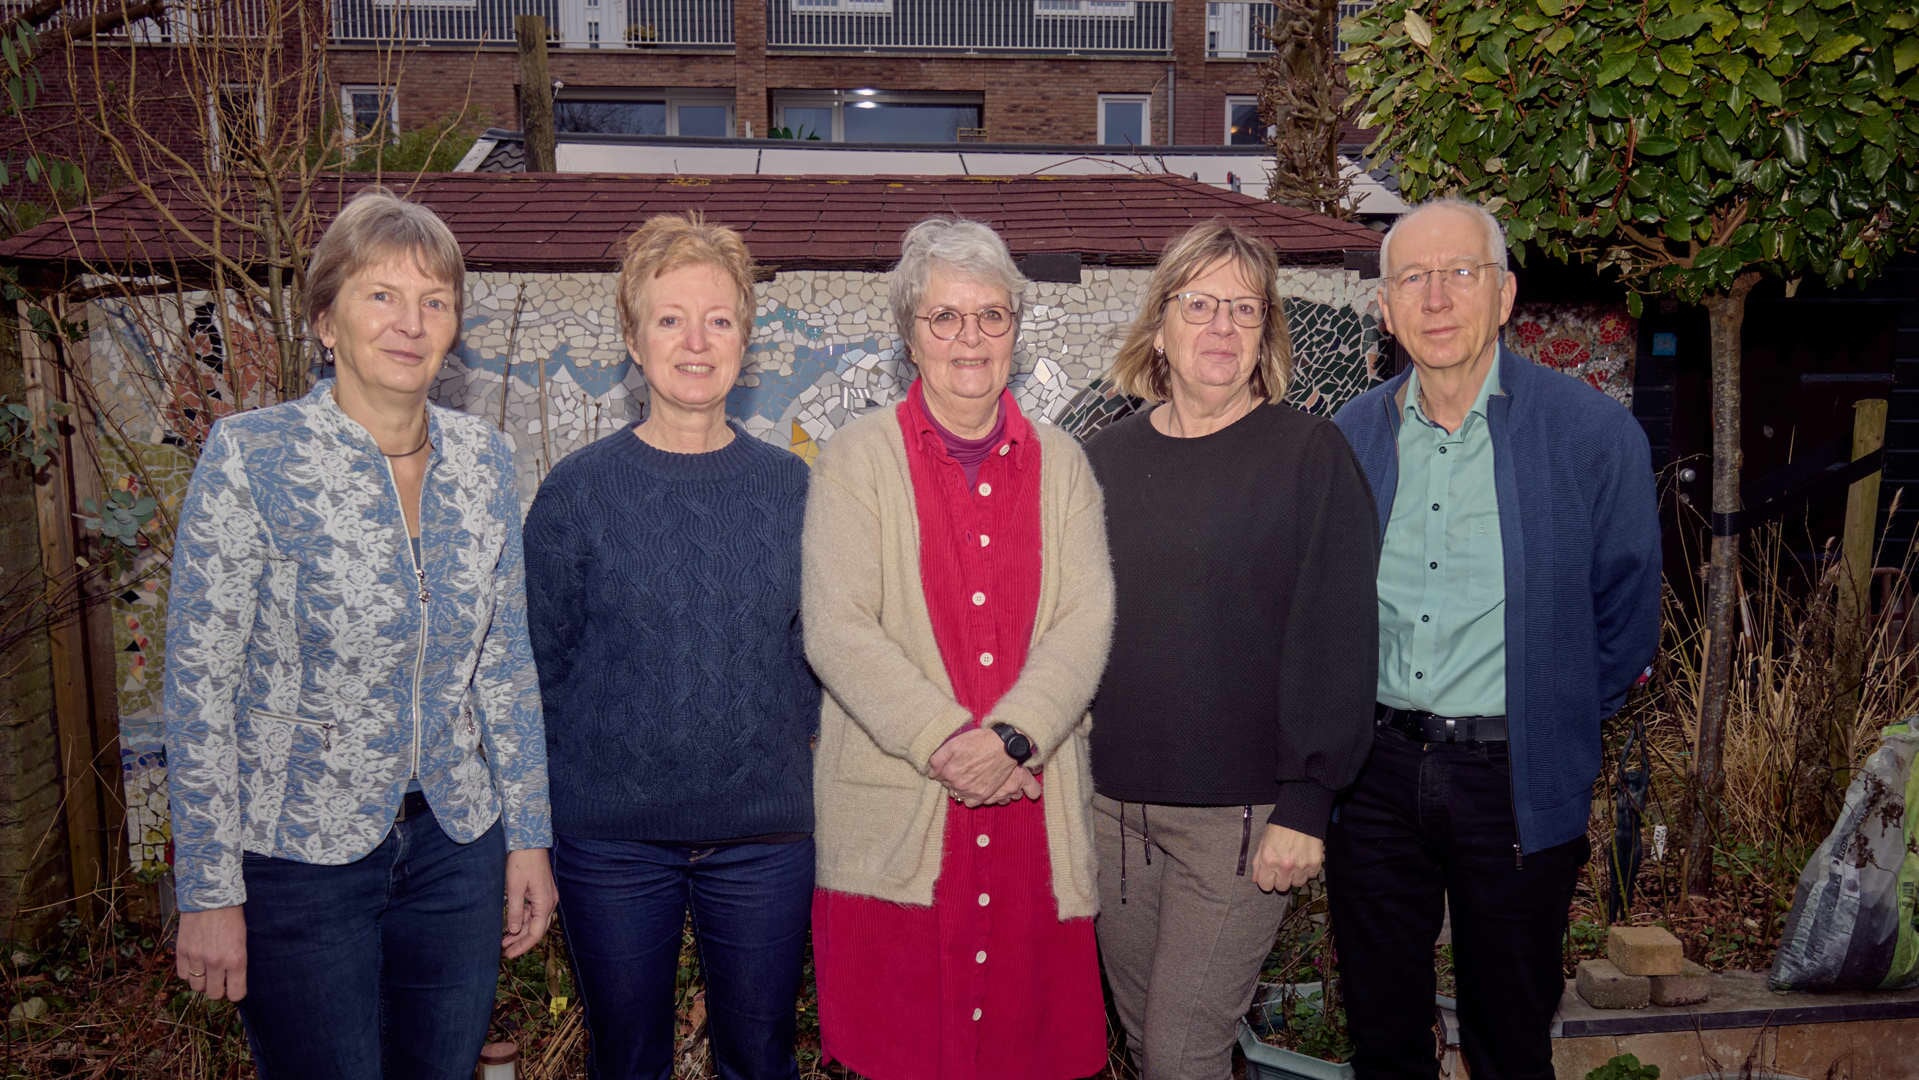 De Teylingse trekkers van de Knarrenhof:. Martine de Ket, Tineke van Galen, Carla Frese, Heleen Klok en Kees Faber.